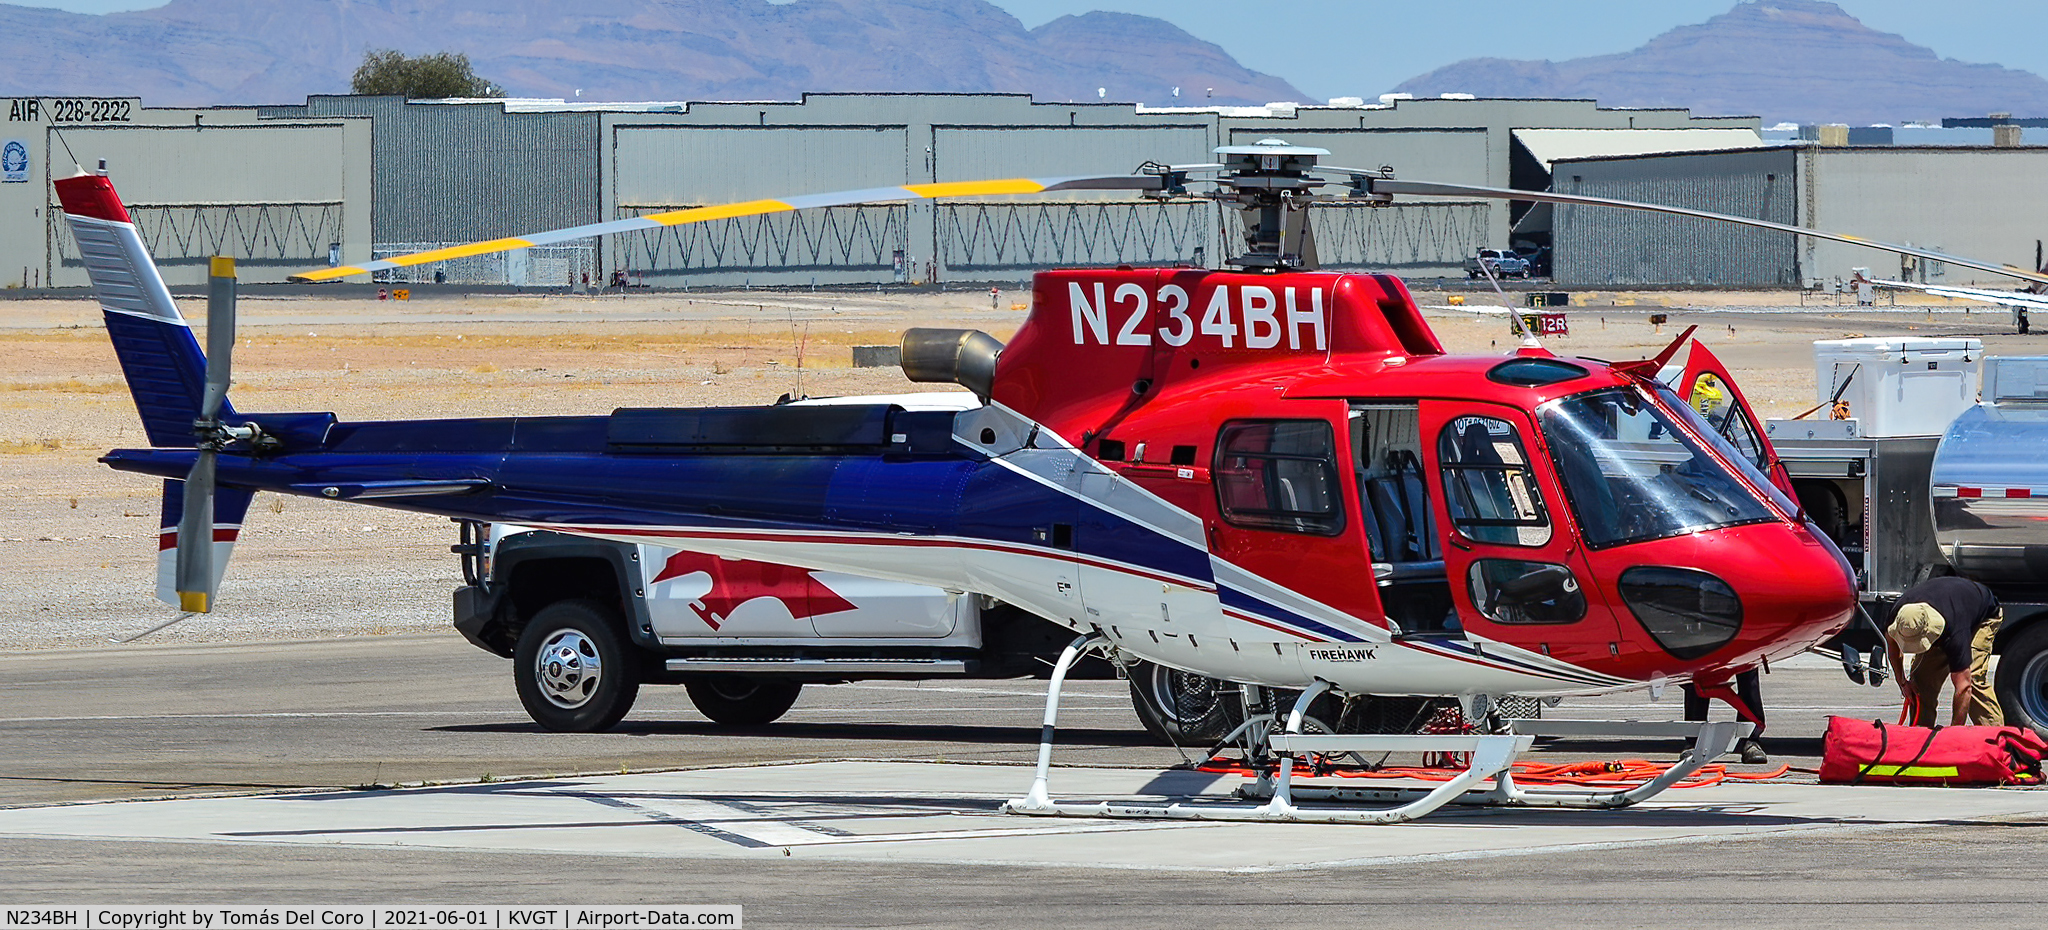 N234BH, 2012 Eurocopter AS-350B-3 Ecureuil Ecureuil C/N 7398, N234BH 2012 AMERICAN EUROCOPTER  AS350B3e s/n 7398 Ecureuil Firehawk - North Las Vegas Airport  KVGT
Photo: Tomás Del Coro
June 1, 2021